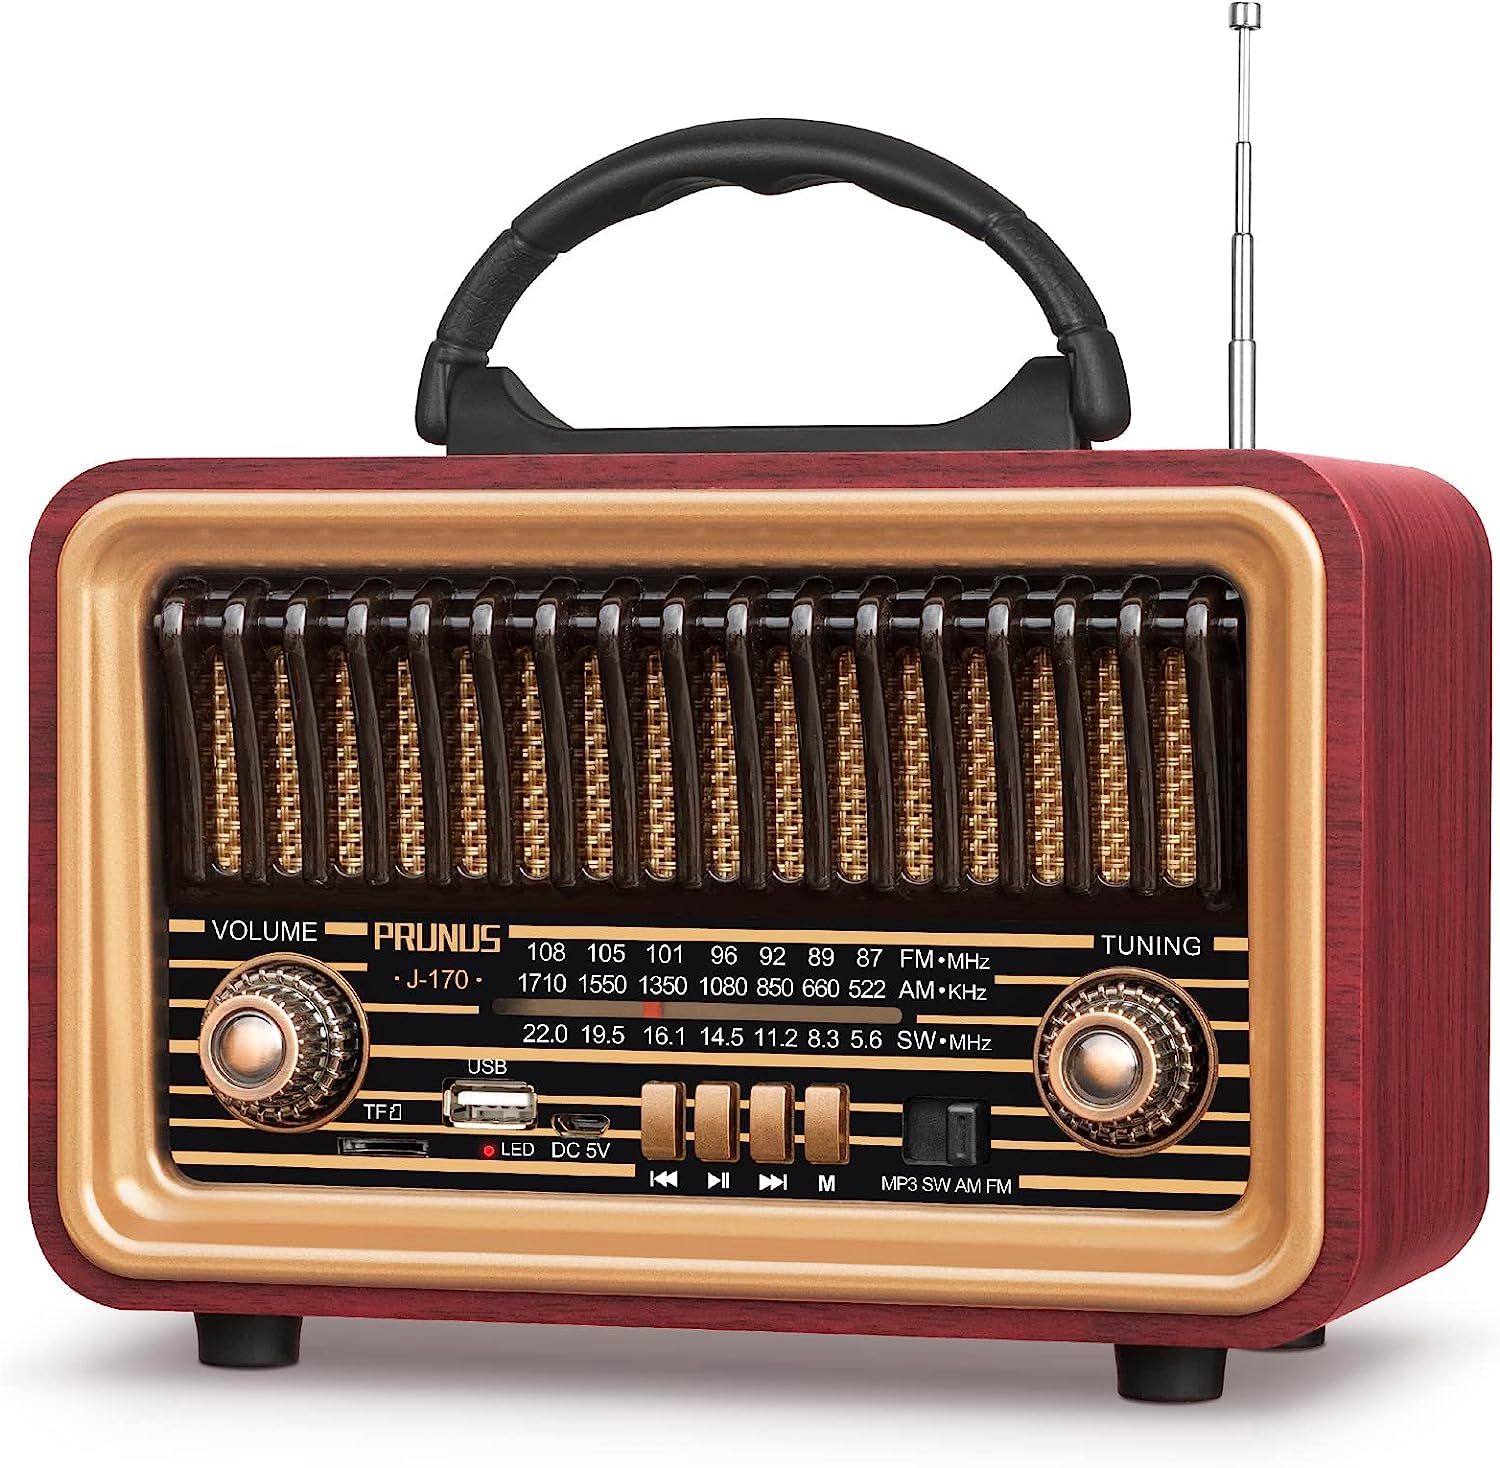 Altavoces Bluetooth retro de radio vintage, fuerte y potente sonido es -  VIRTUAL MUEBLES